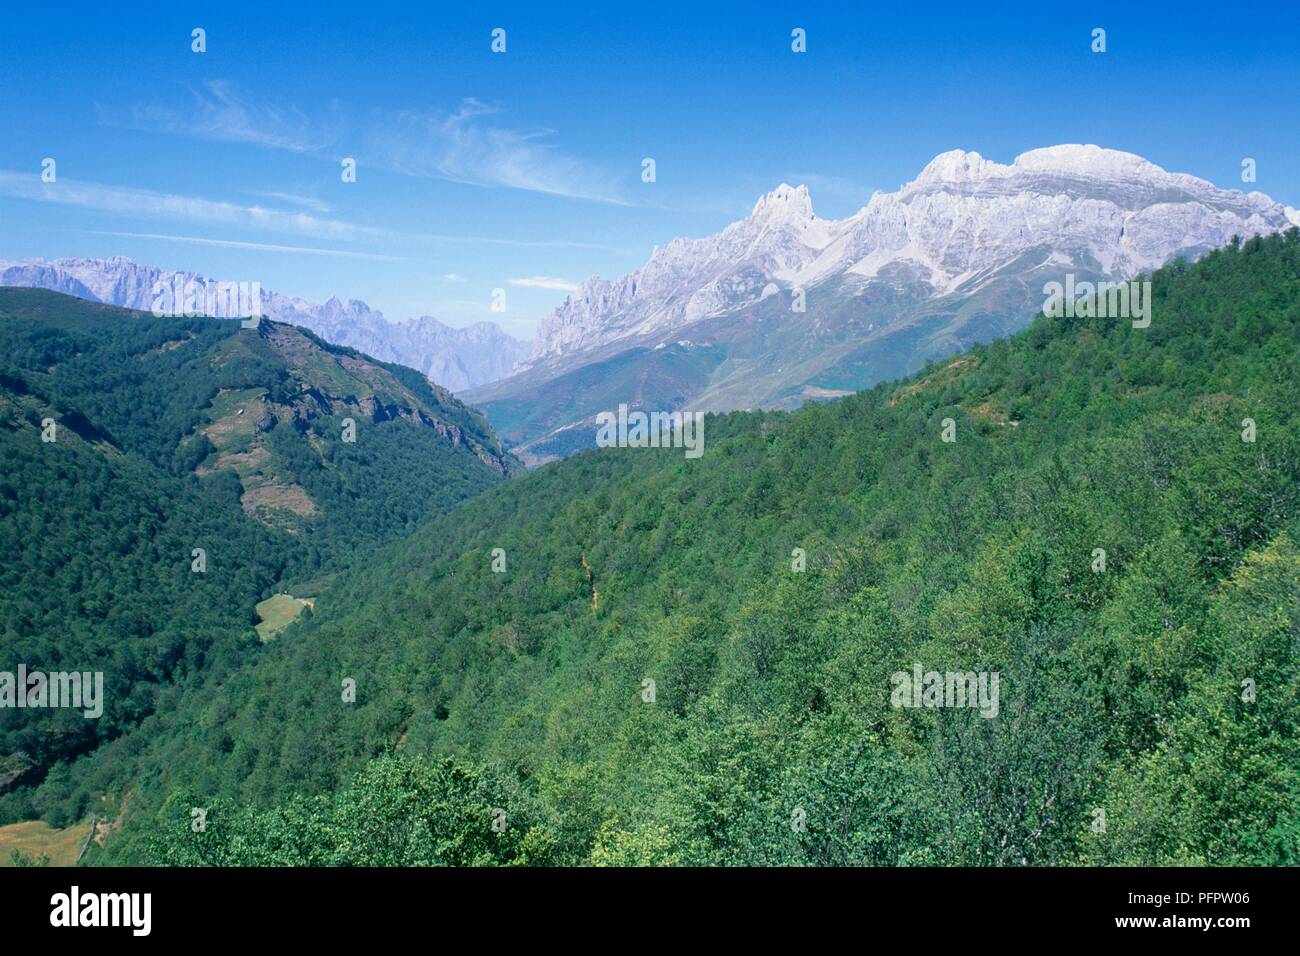 Spanien, mit Blick auf die Picos de Europa - Gebirge, Teil der Kantabrischen Berge Stockfoto